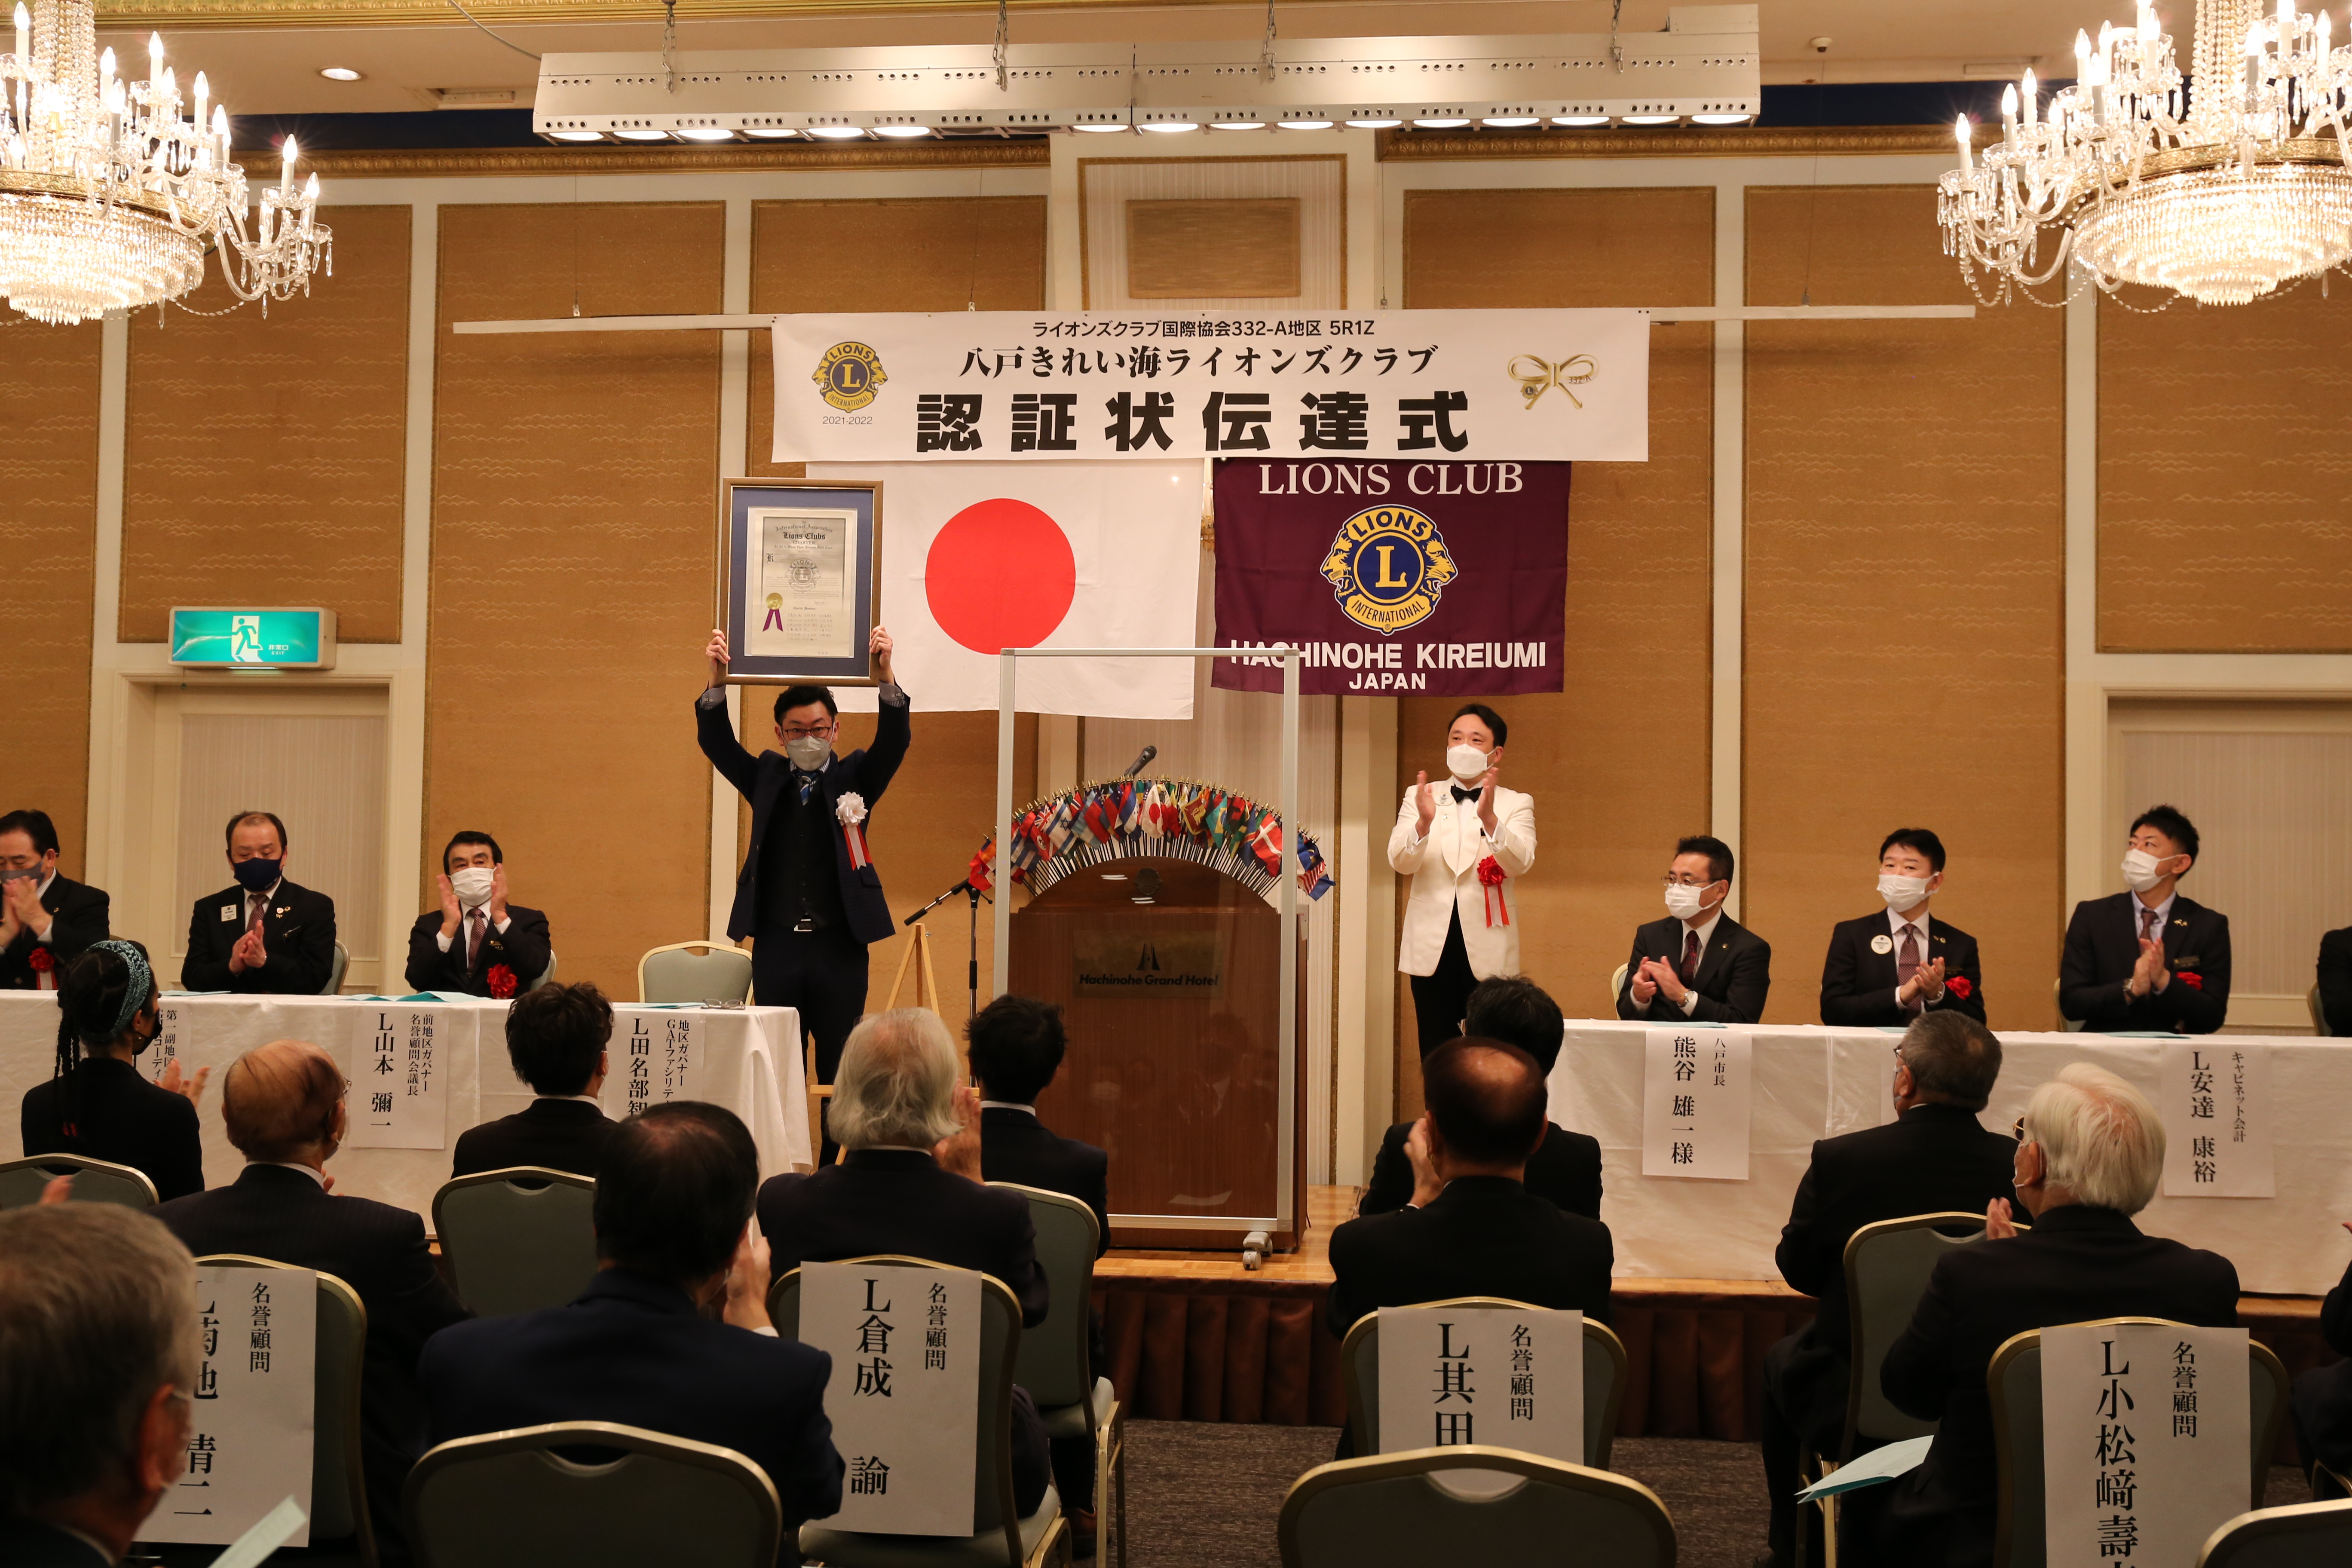 Noite da fundação do Lions Clube Kireiumi de Hachinohe